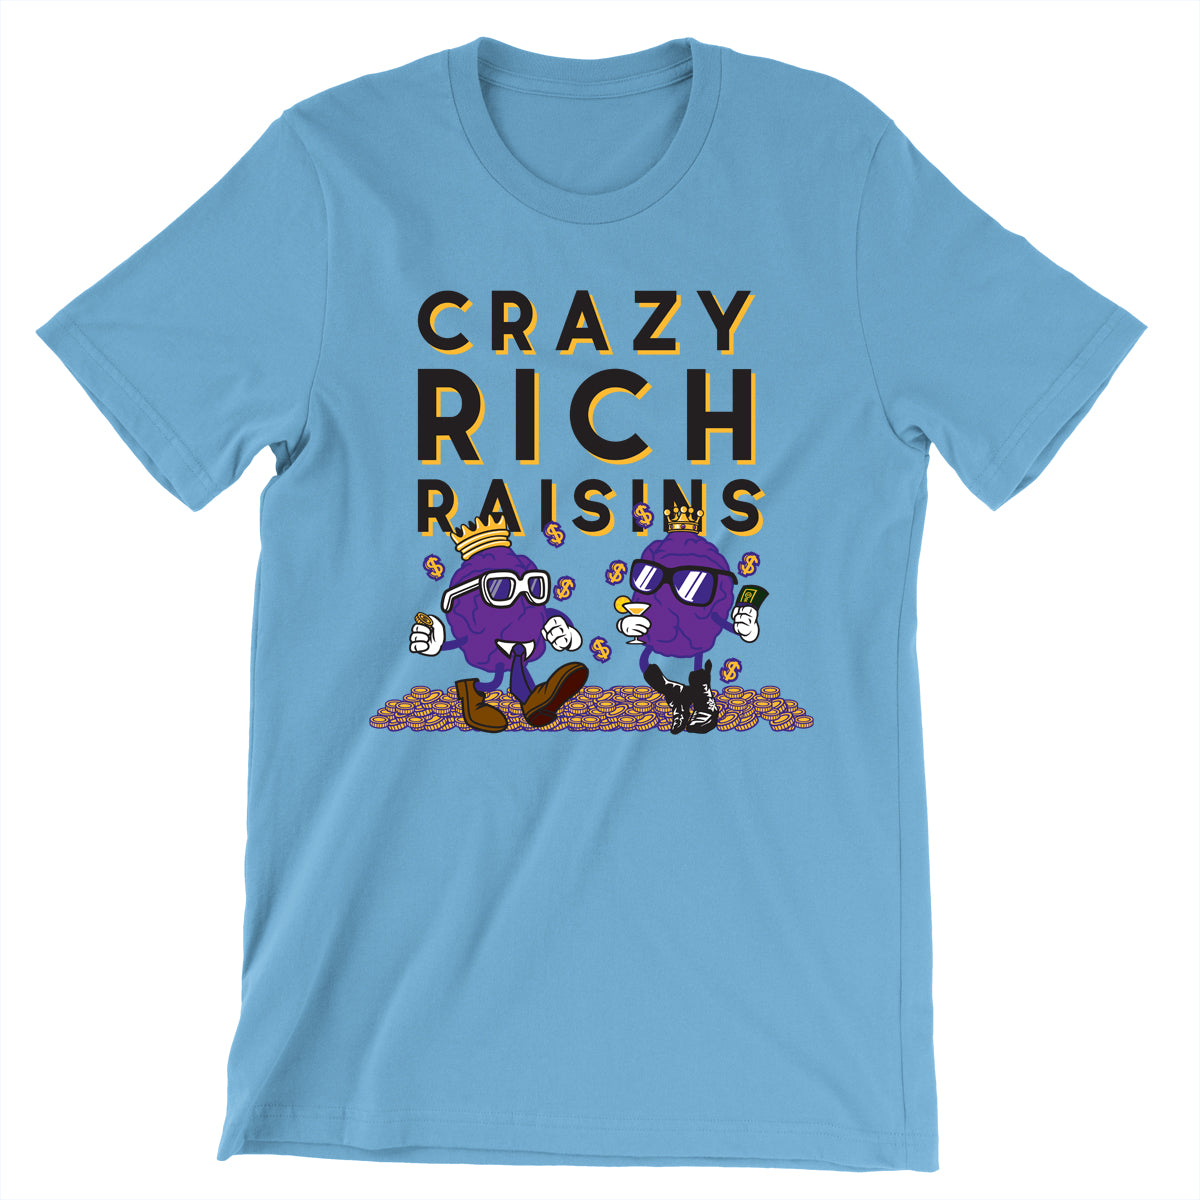 Movie The Food - Crazy Rich Raisins T-Shirt - Ocean Blue